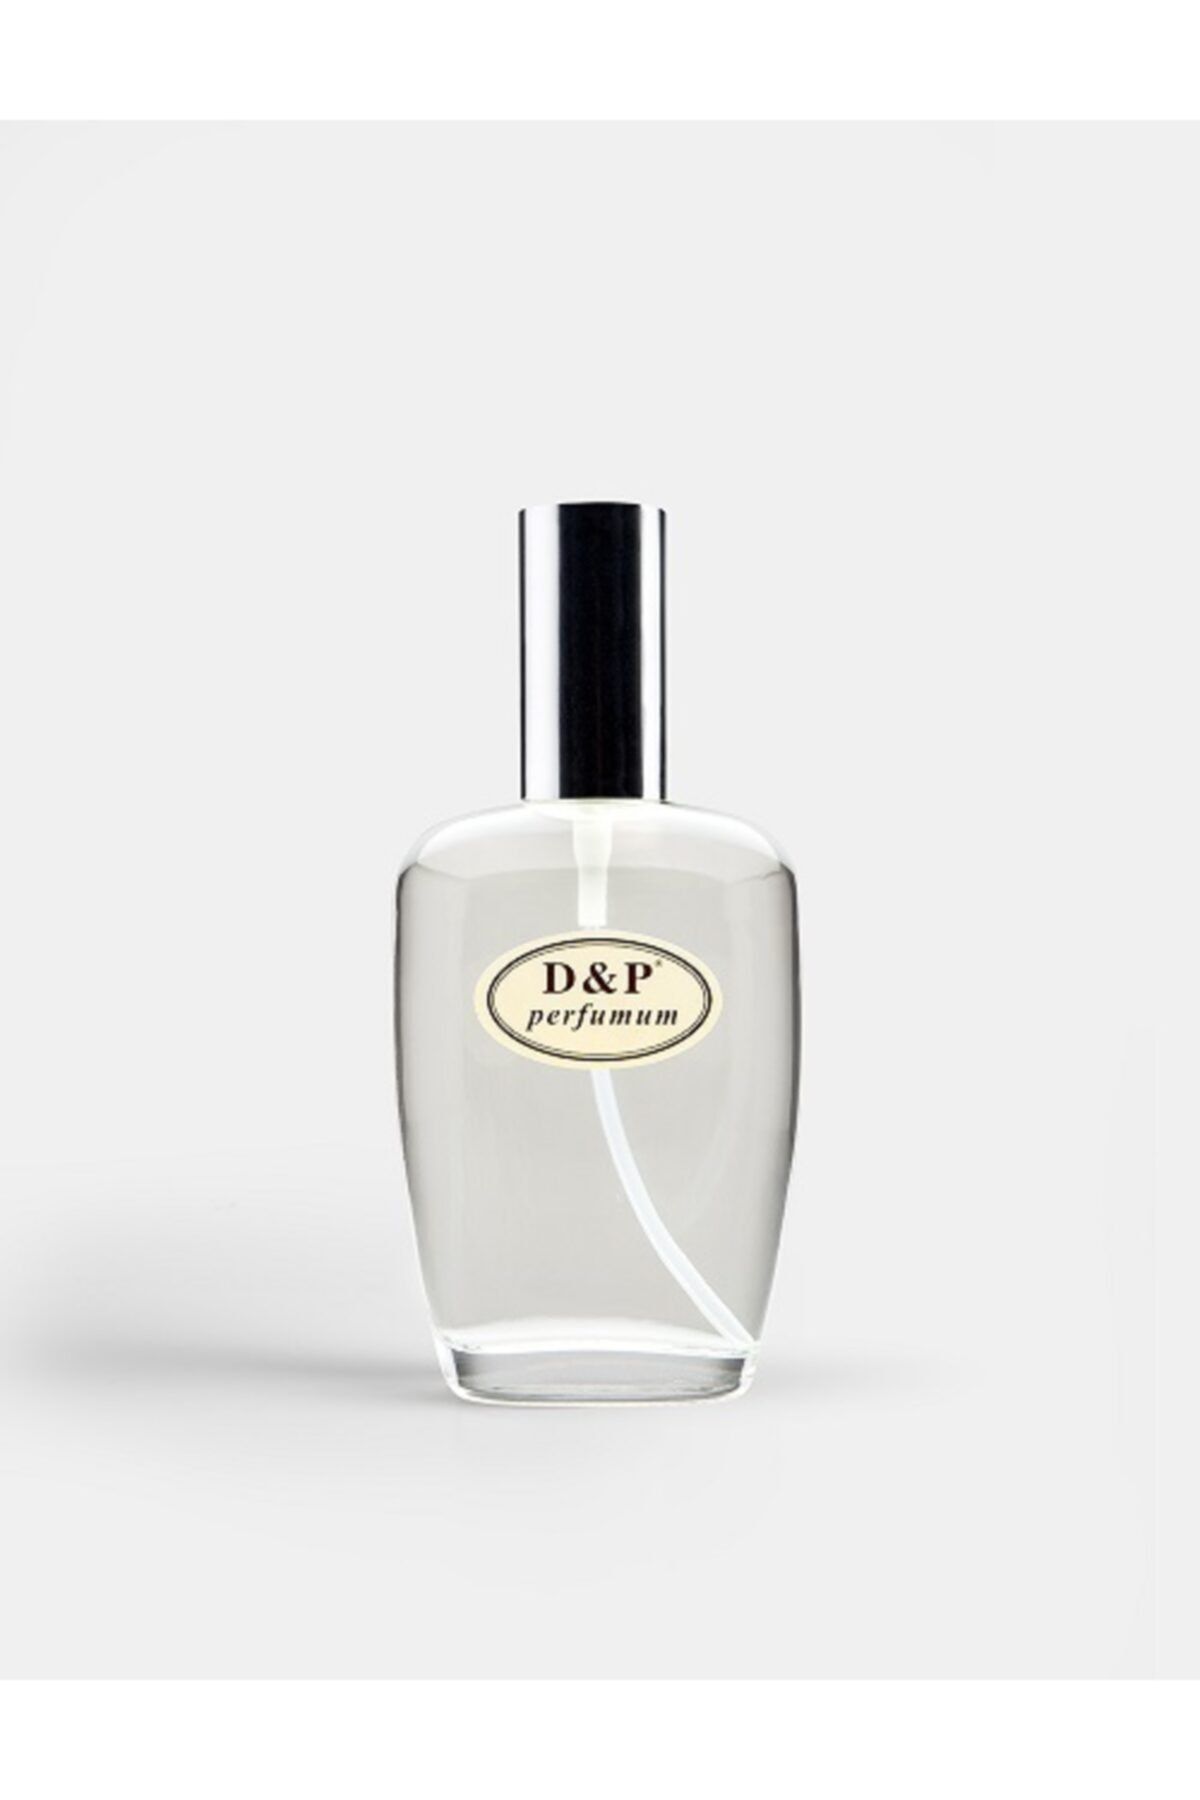 D&P Perfumum L3 Kadın Parfüm 100 ml